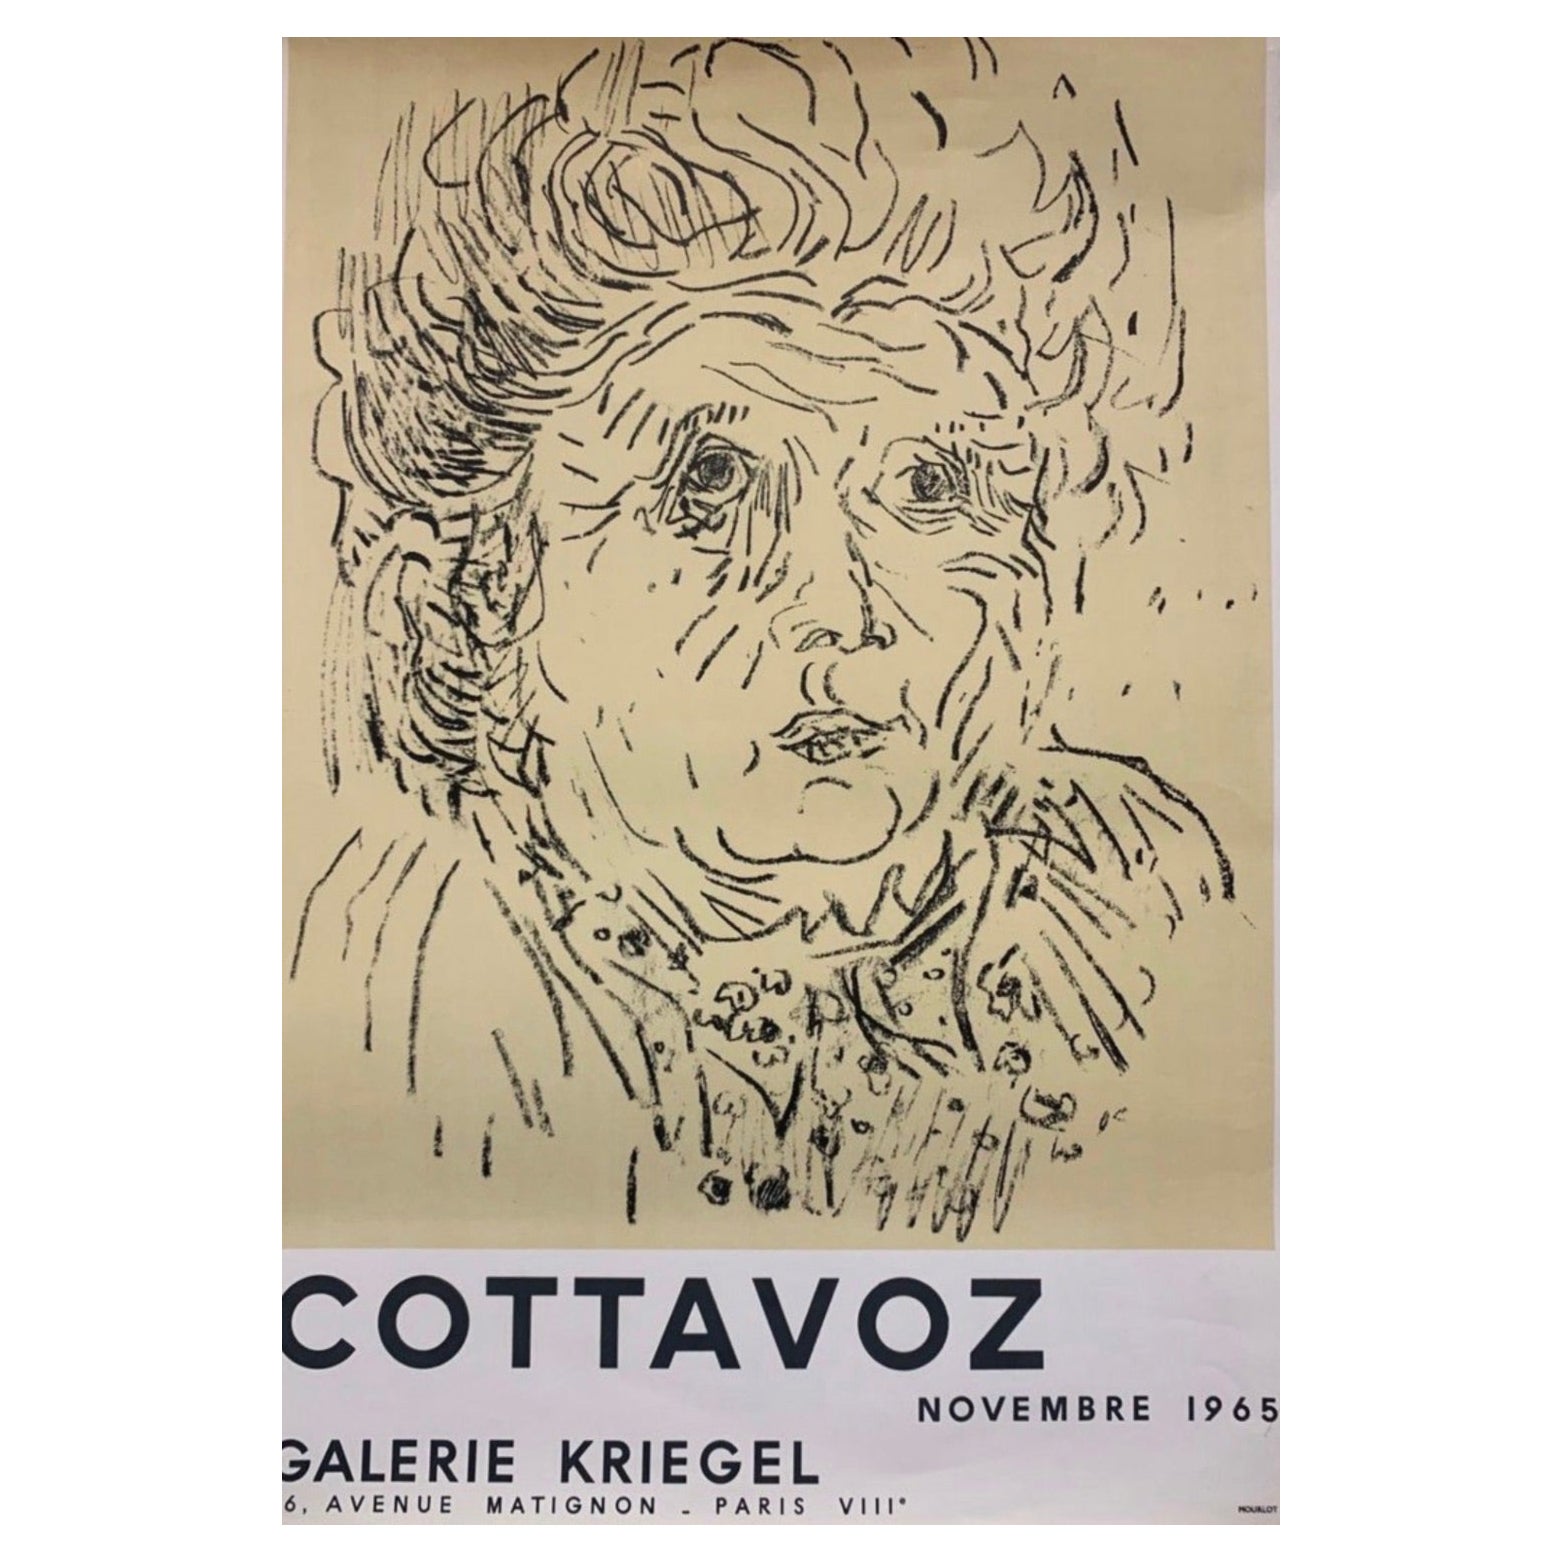 Affiche française d'origine d'Andr Cottavoz, Galerie Kriegel, 1965